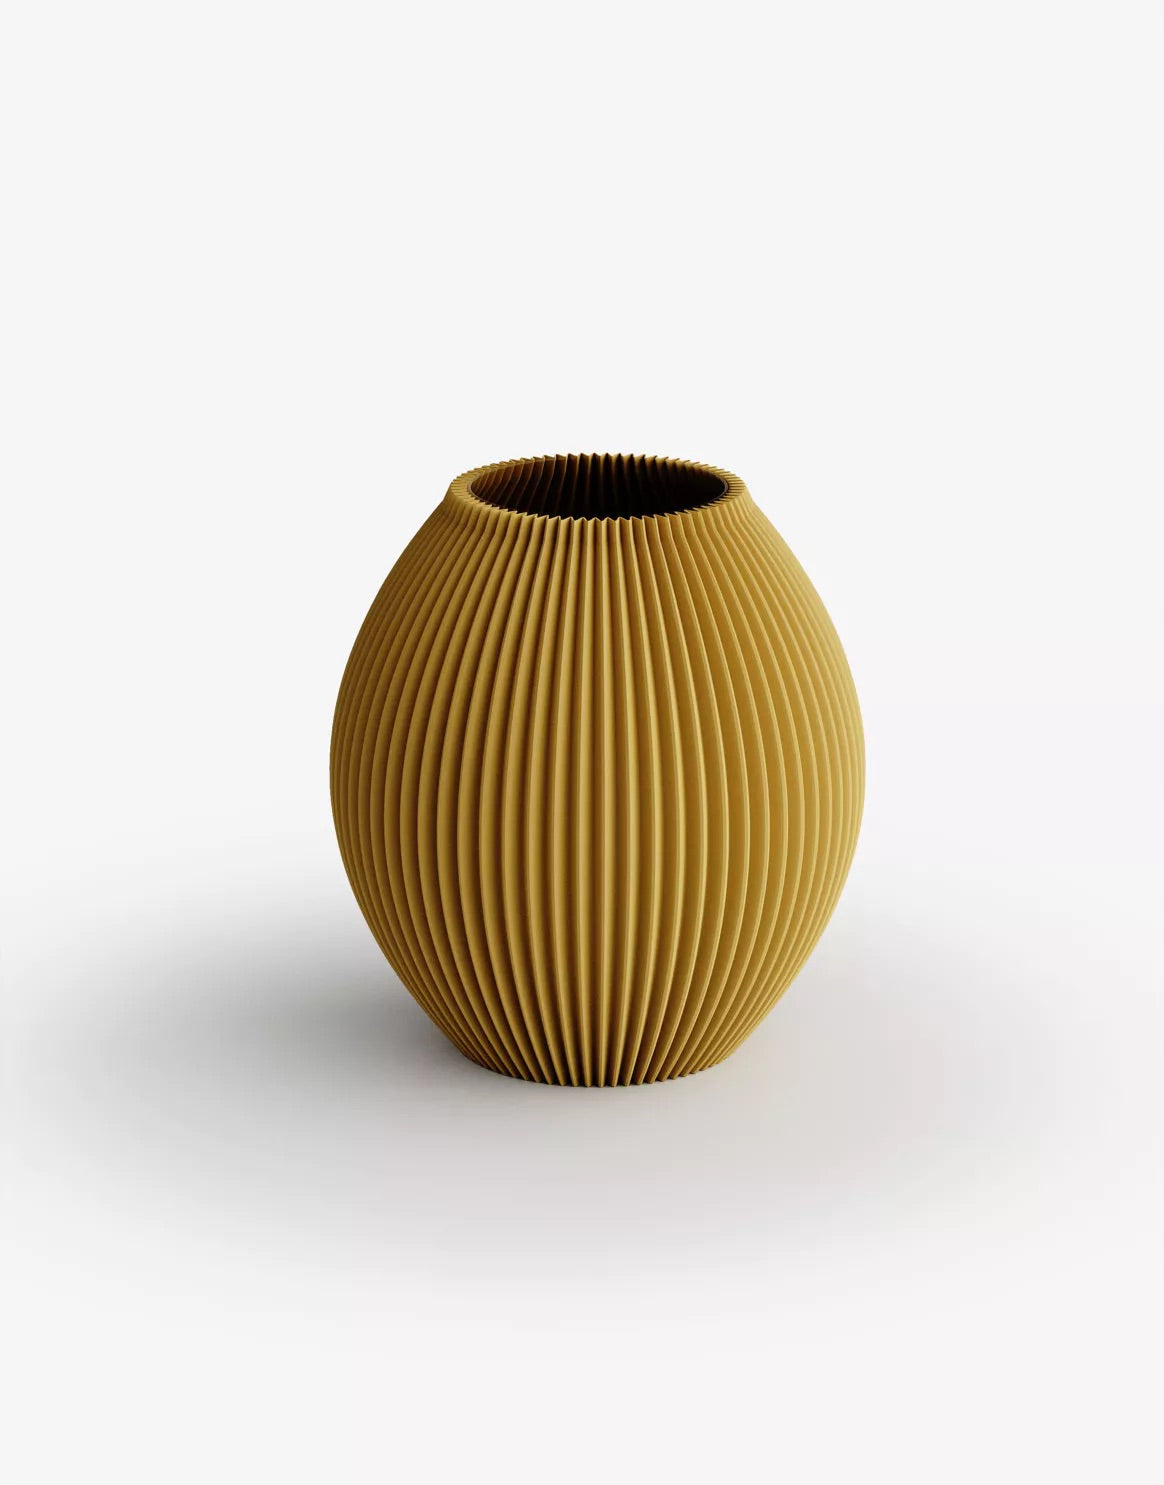 'Poke' vase in Golden Orange Small